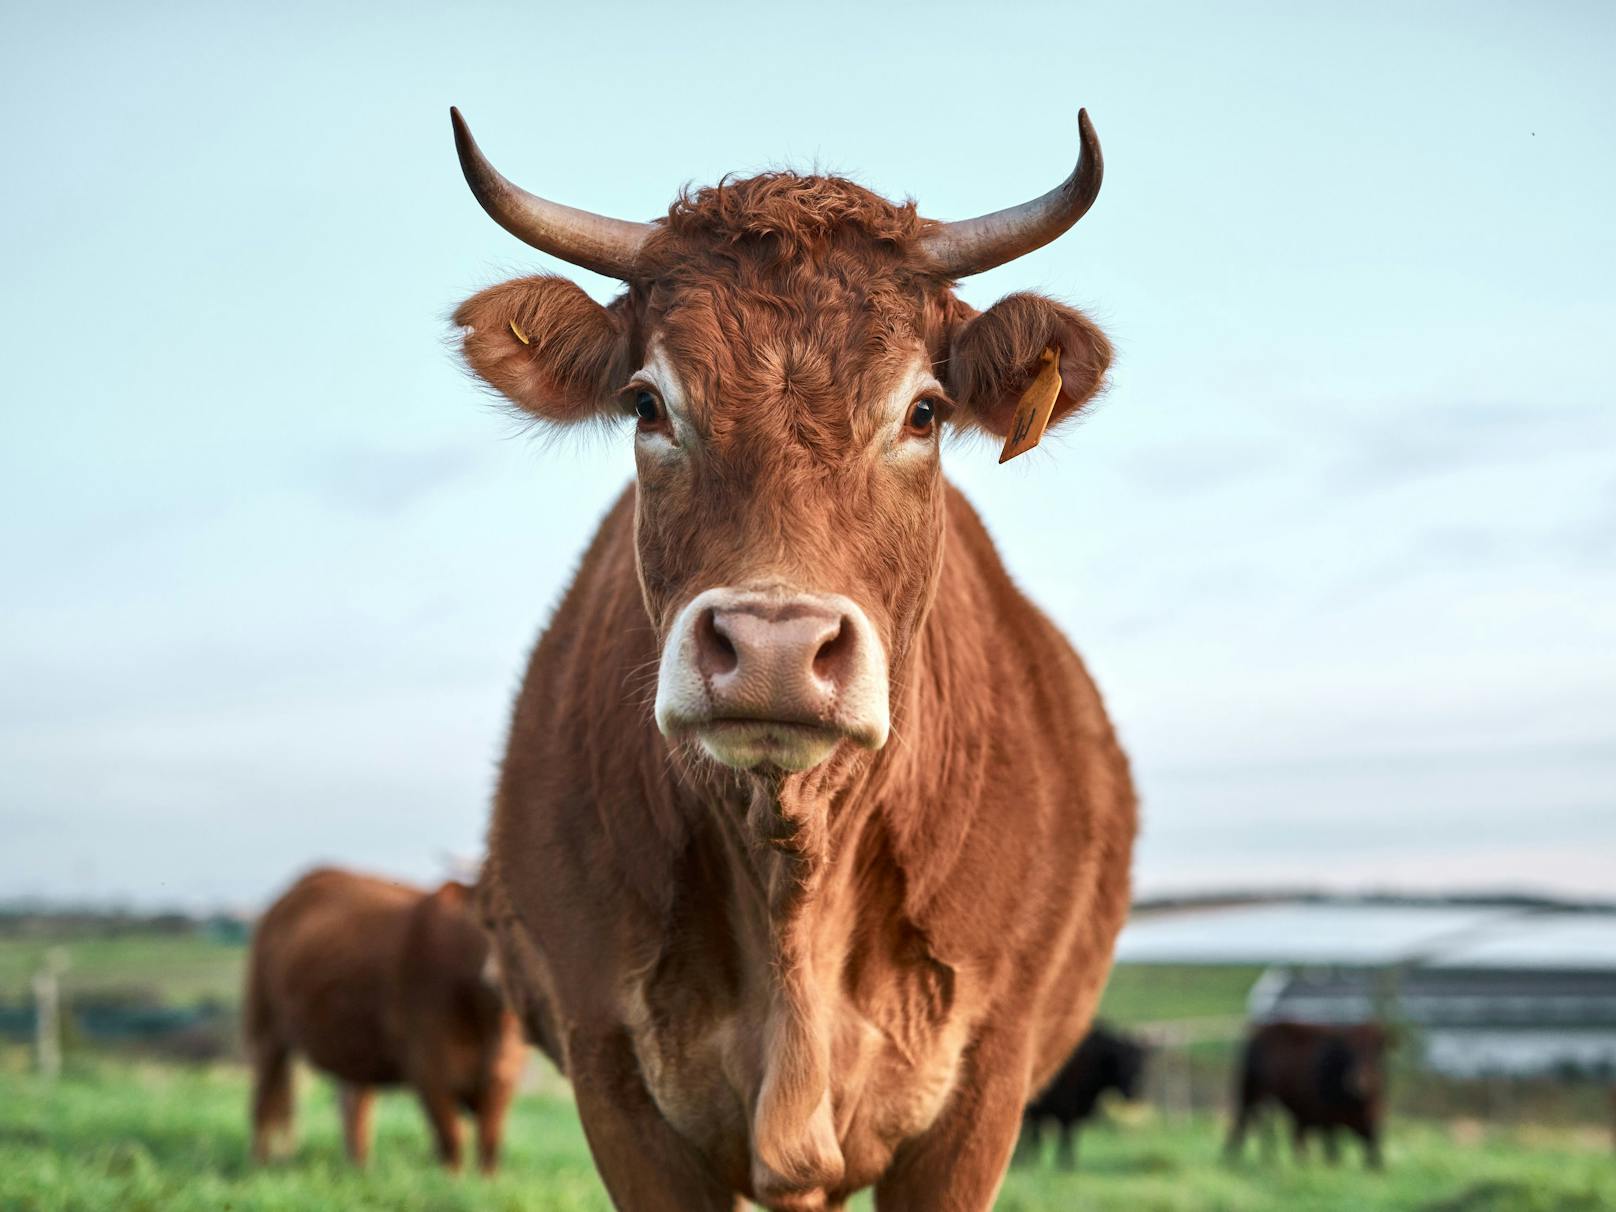 Die Tierhaltung ist weltweit für zwei Drittel der Emissionen des Agrarsektors verantwortlich, dem zweitgrößten CO2-Verursacher.